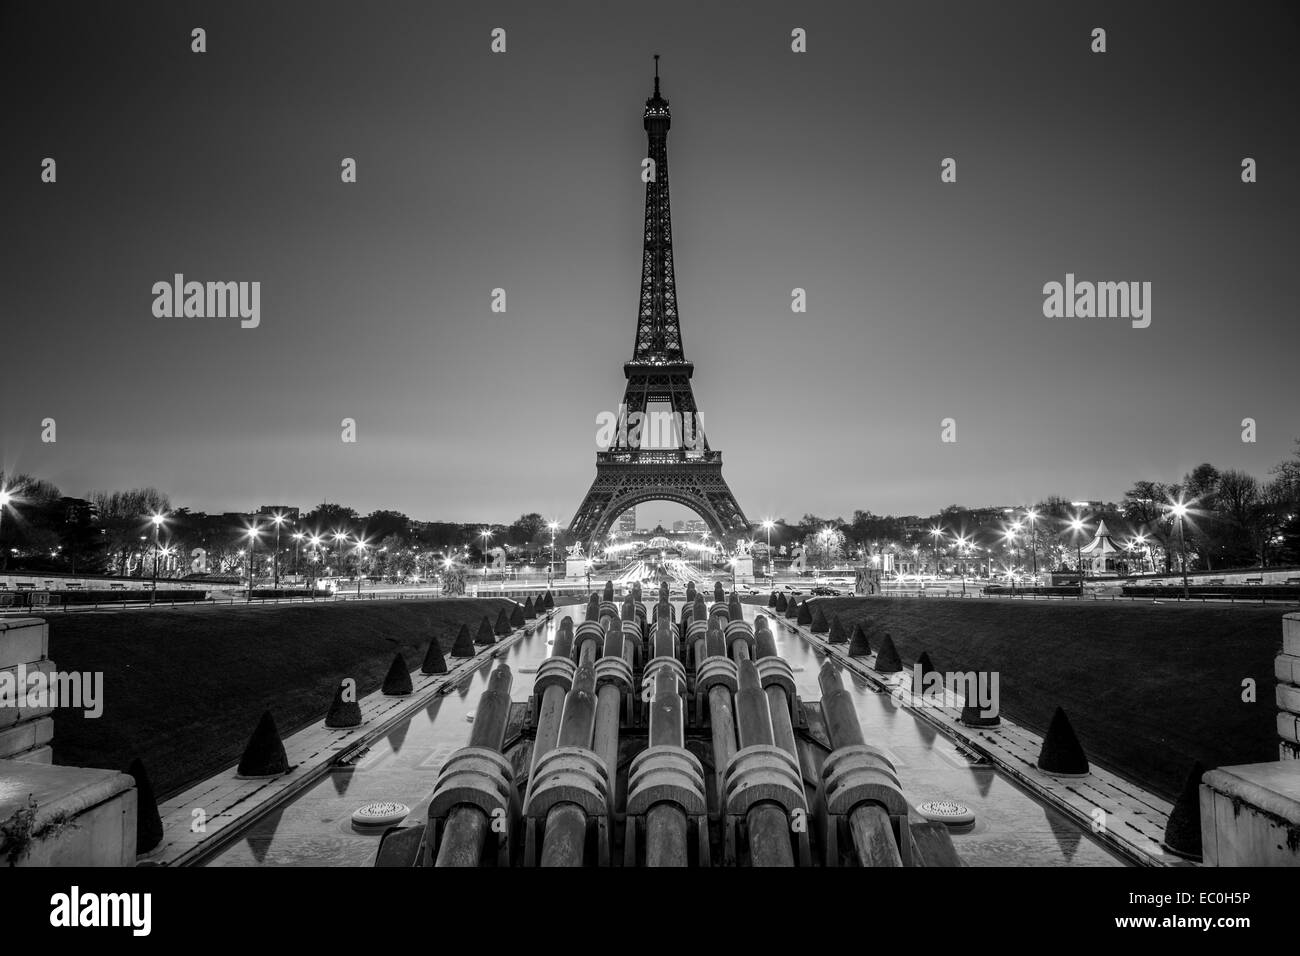 La tour Eiffel, Paris, France en noir et blanc. Banque D'Images